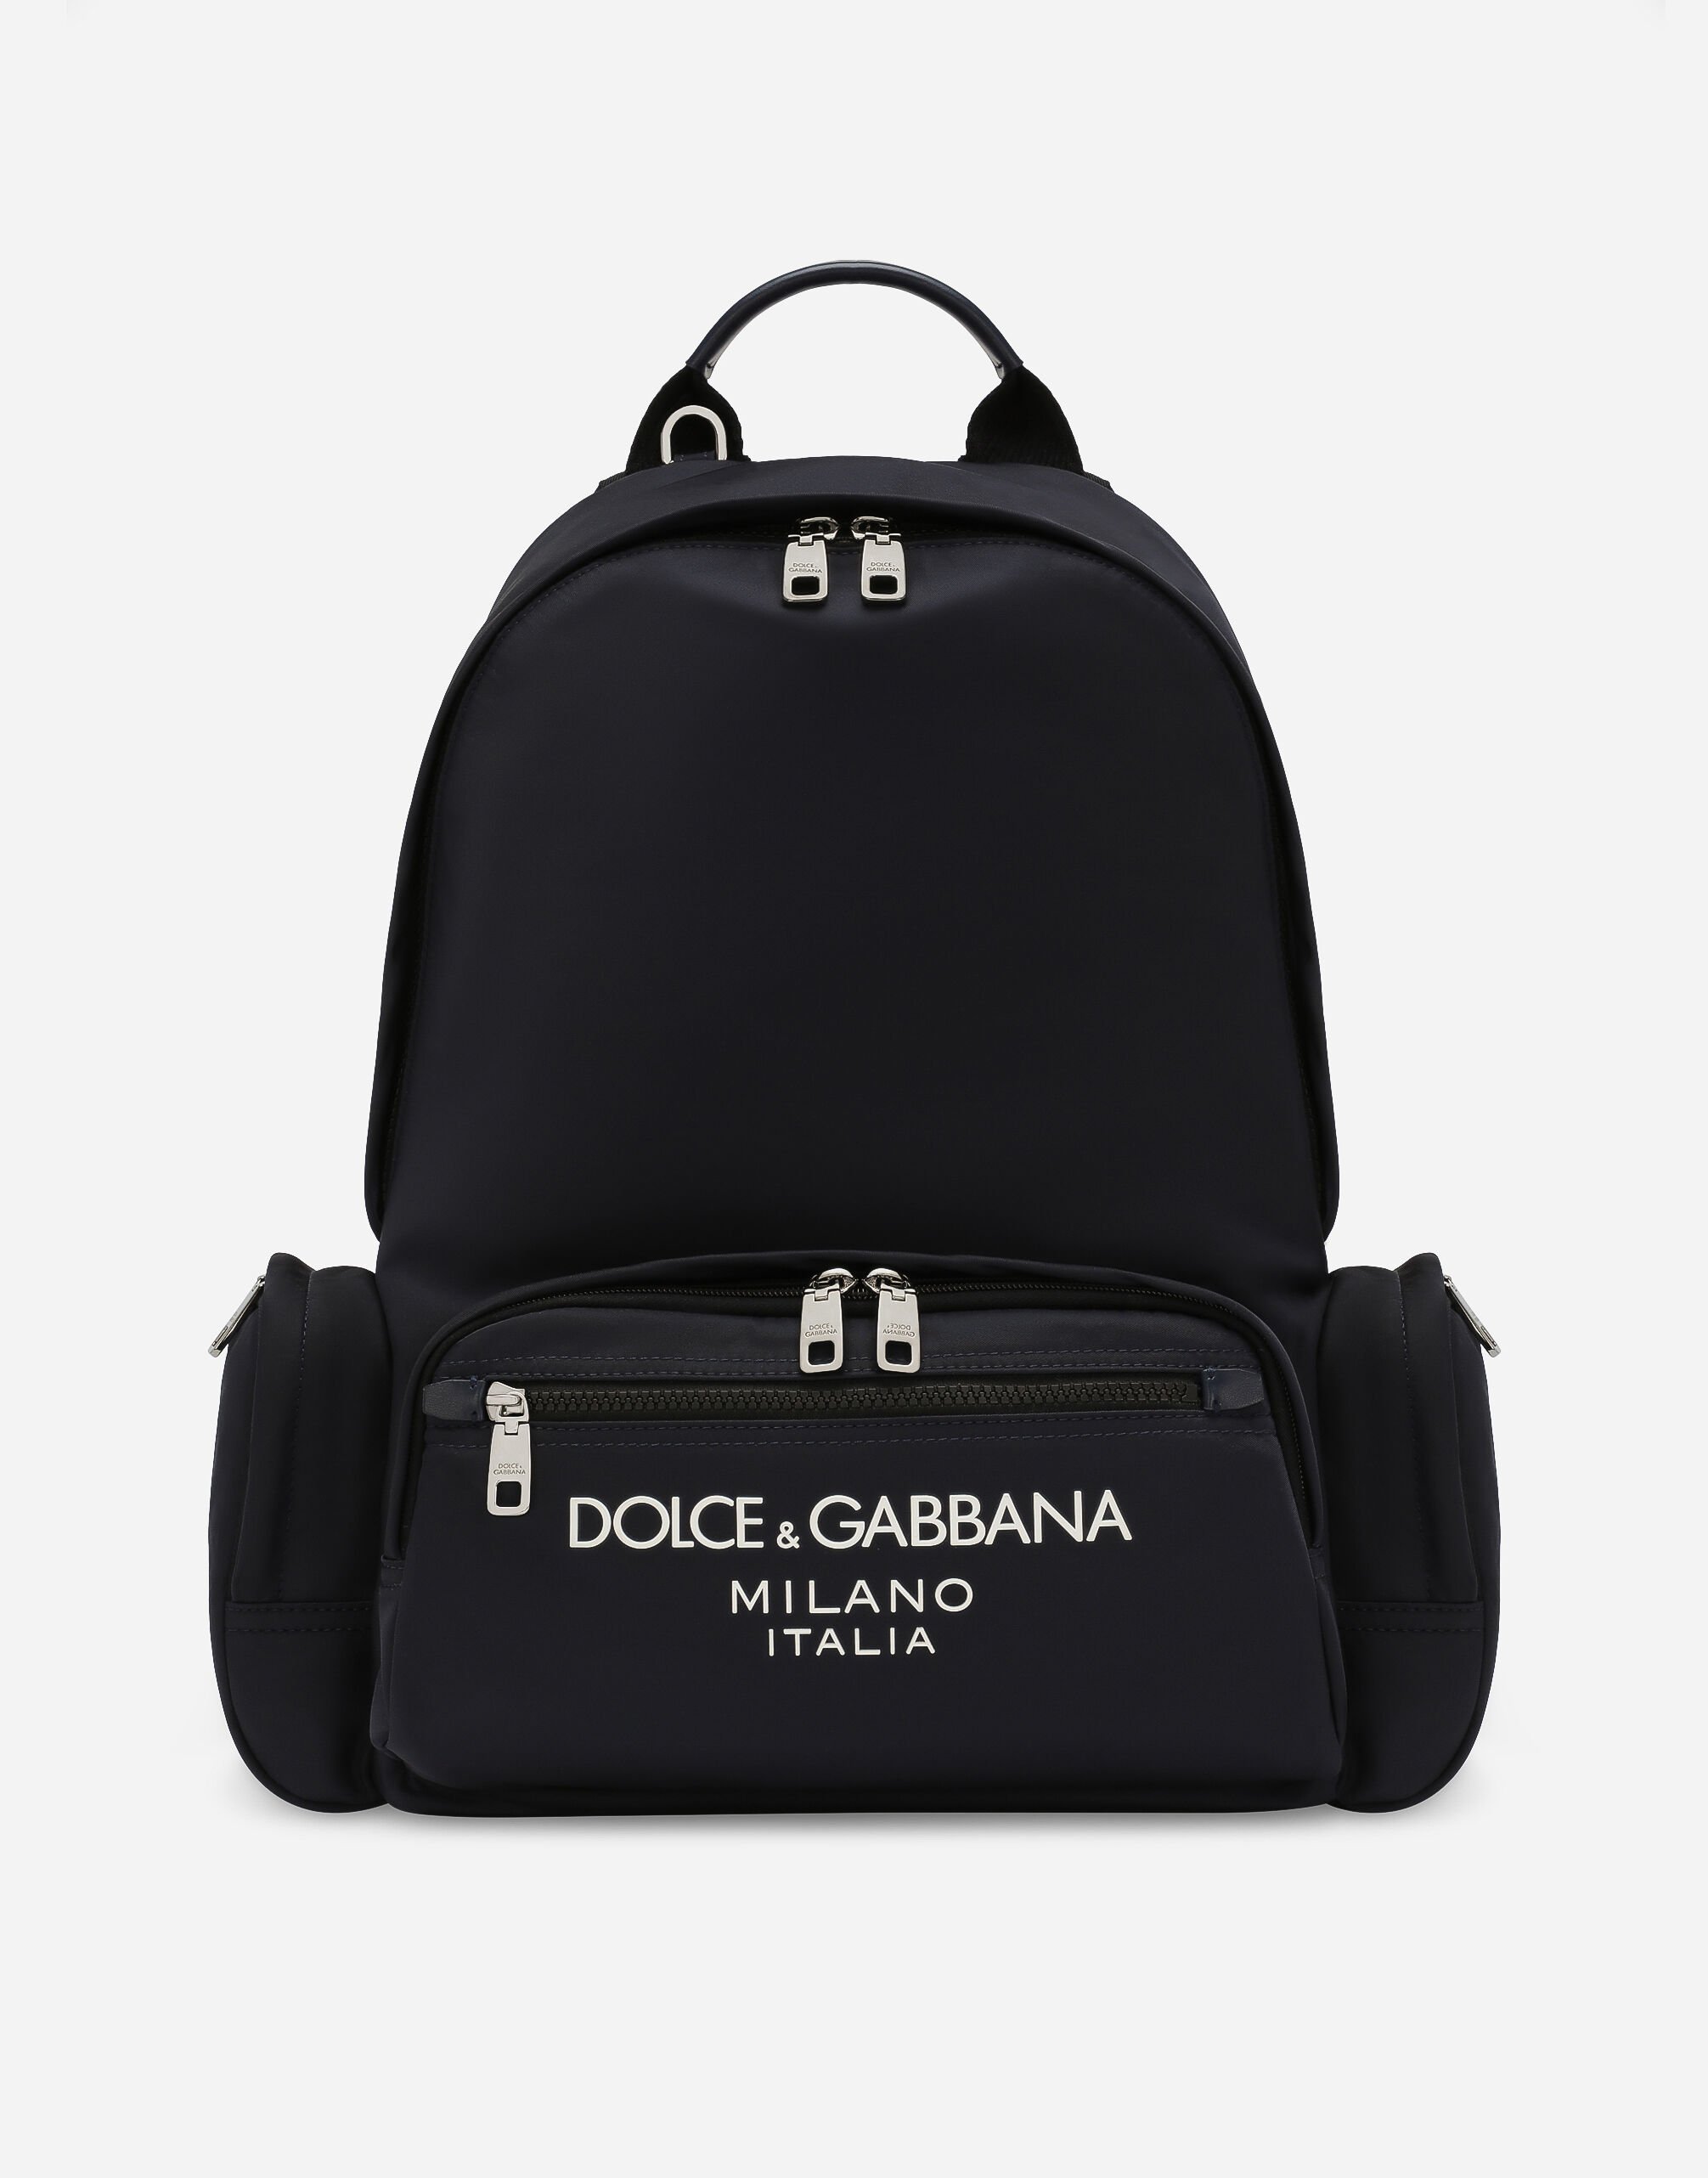 Dolce & Gabbana site